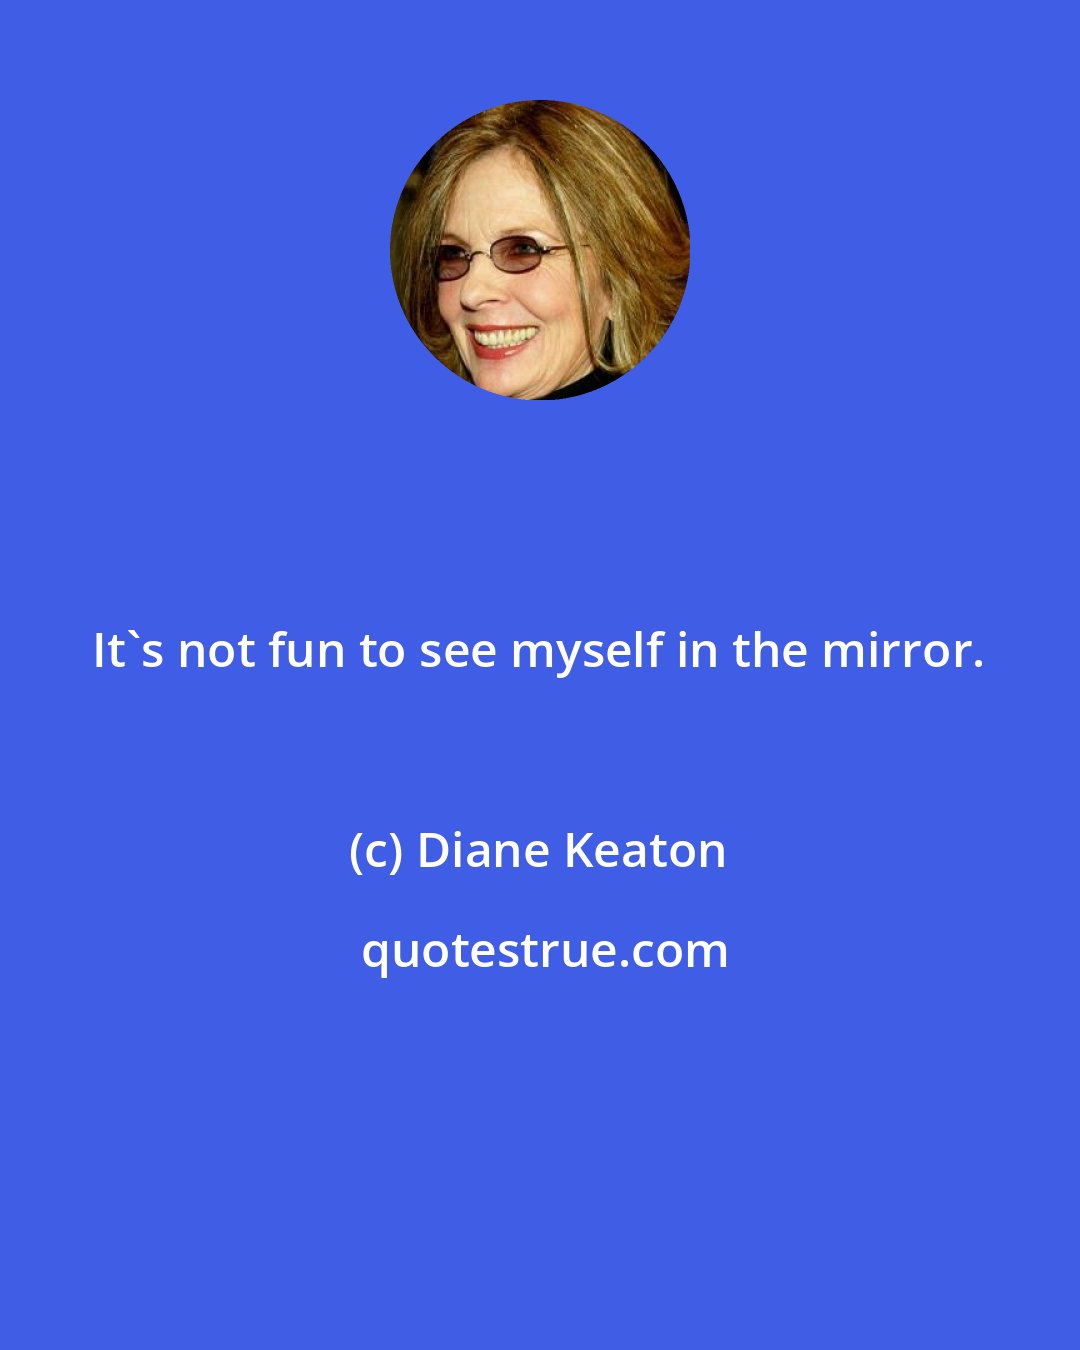 Diane Keaton: It's not fun to see myself in the mirror.